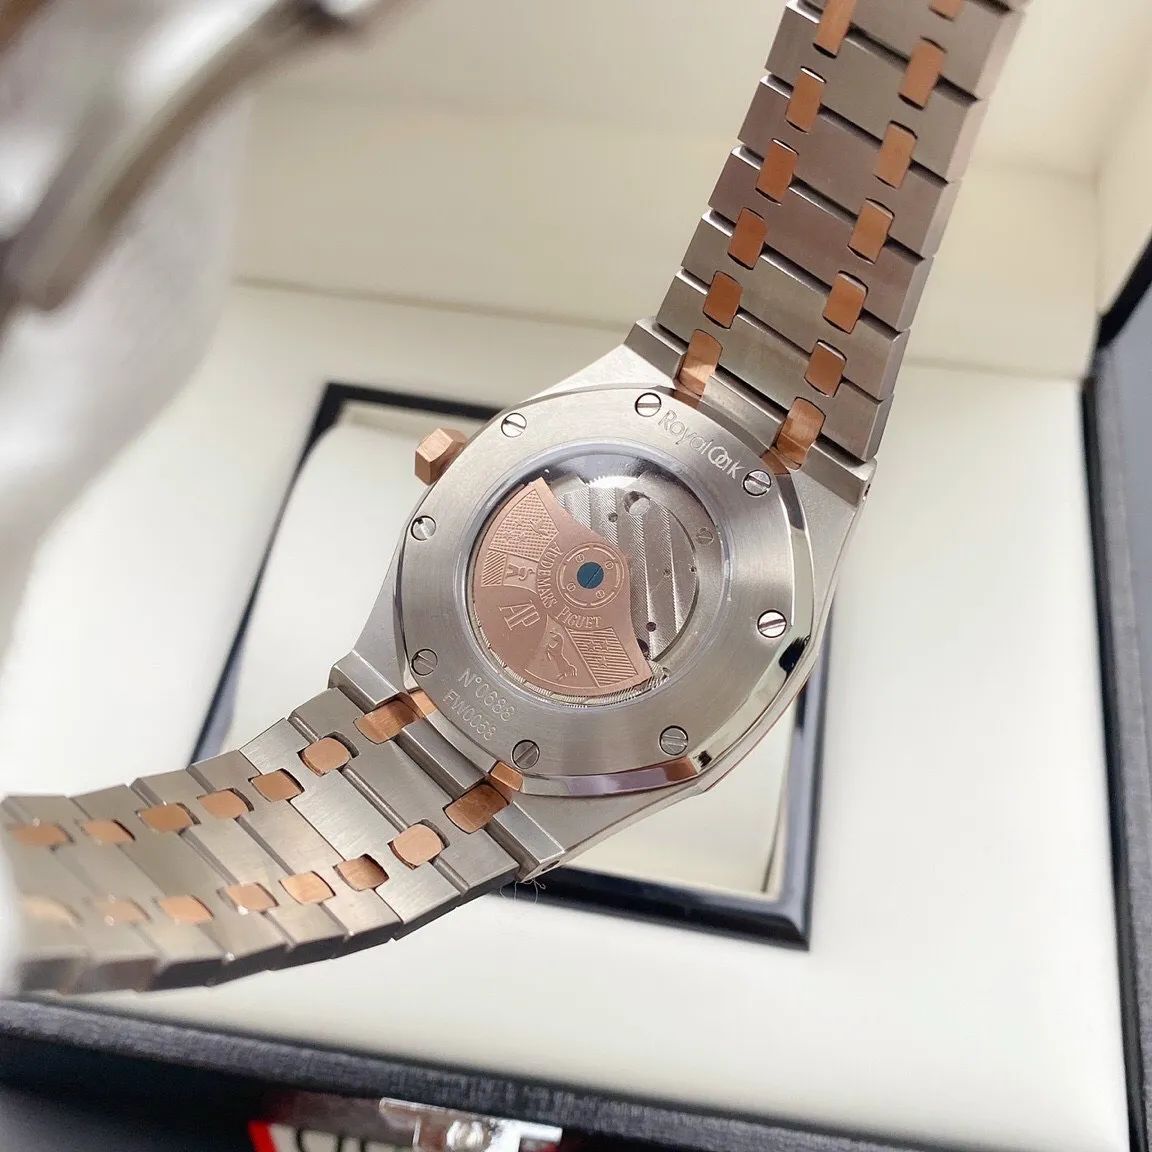 Audemars Piguet Royal Oak Watch With 3-Color Engine Dwatch